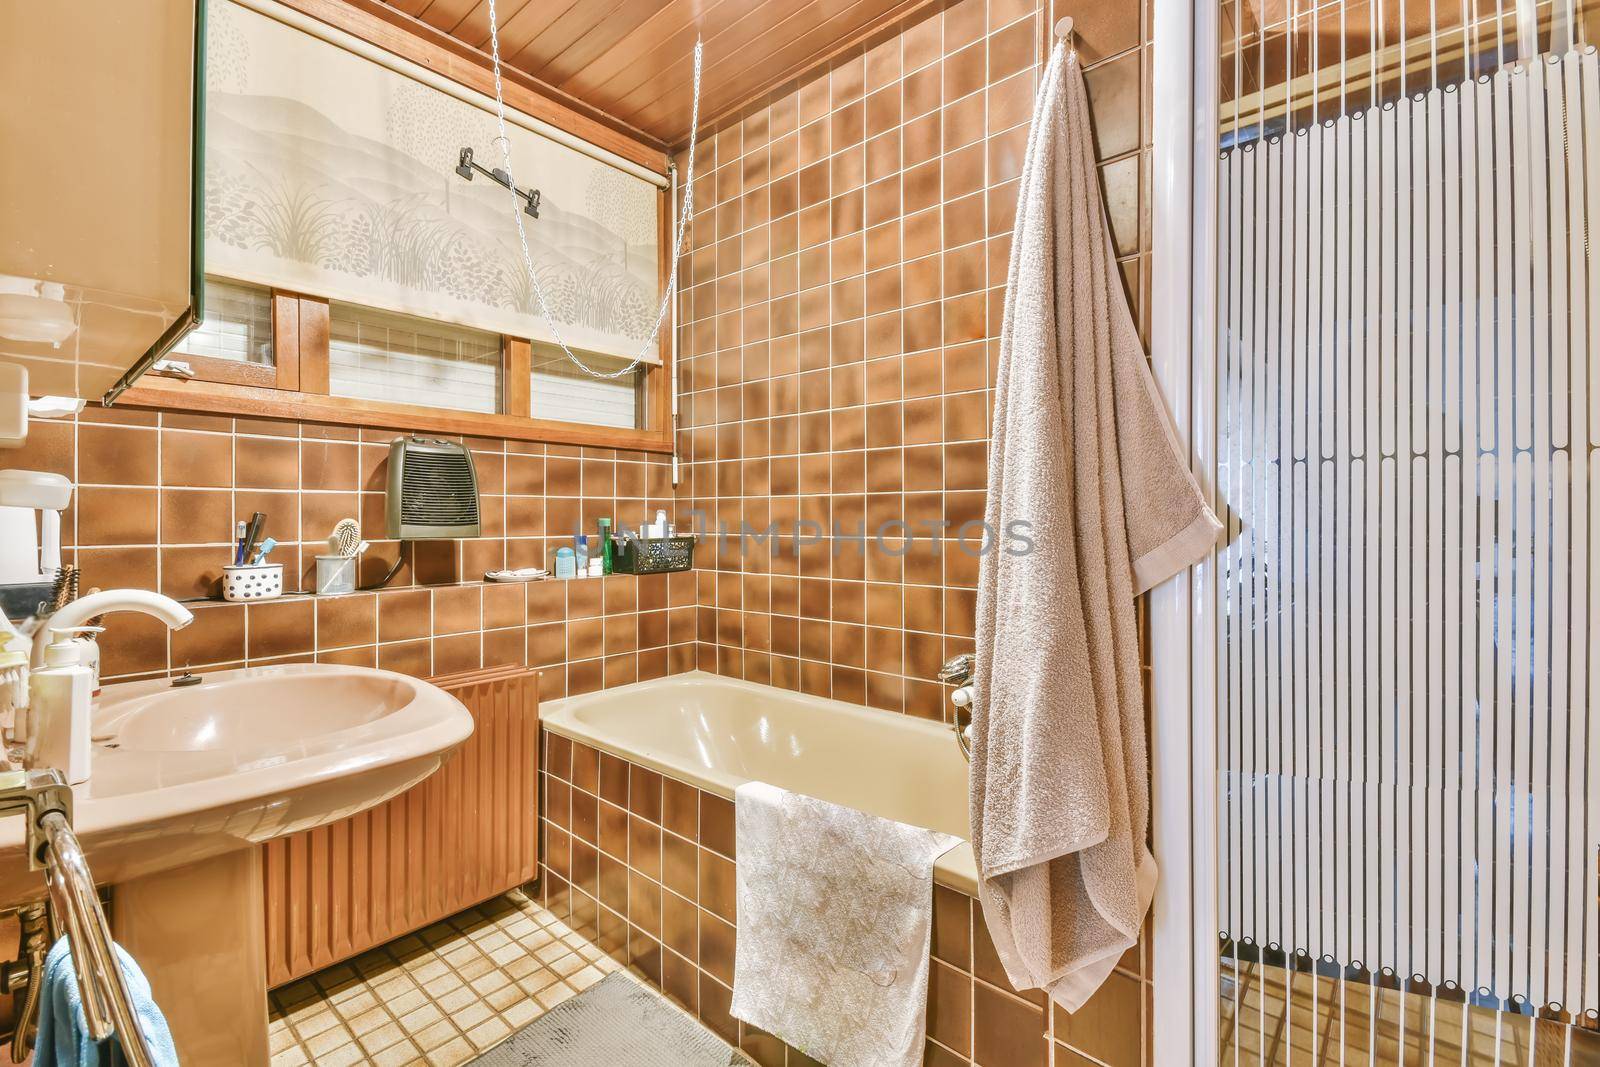 An elegant bathroom in stylish residential building